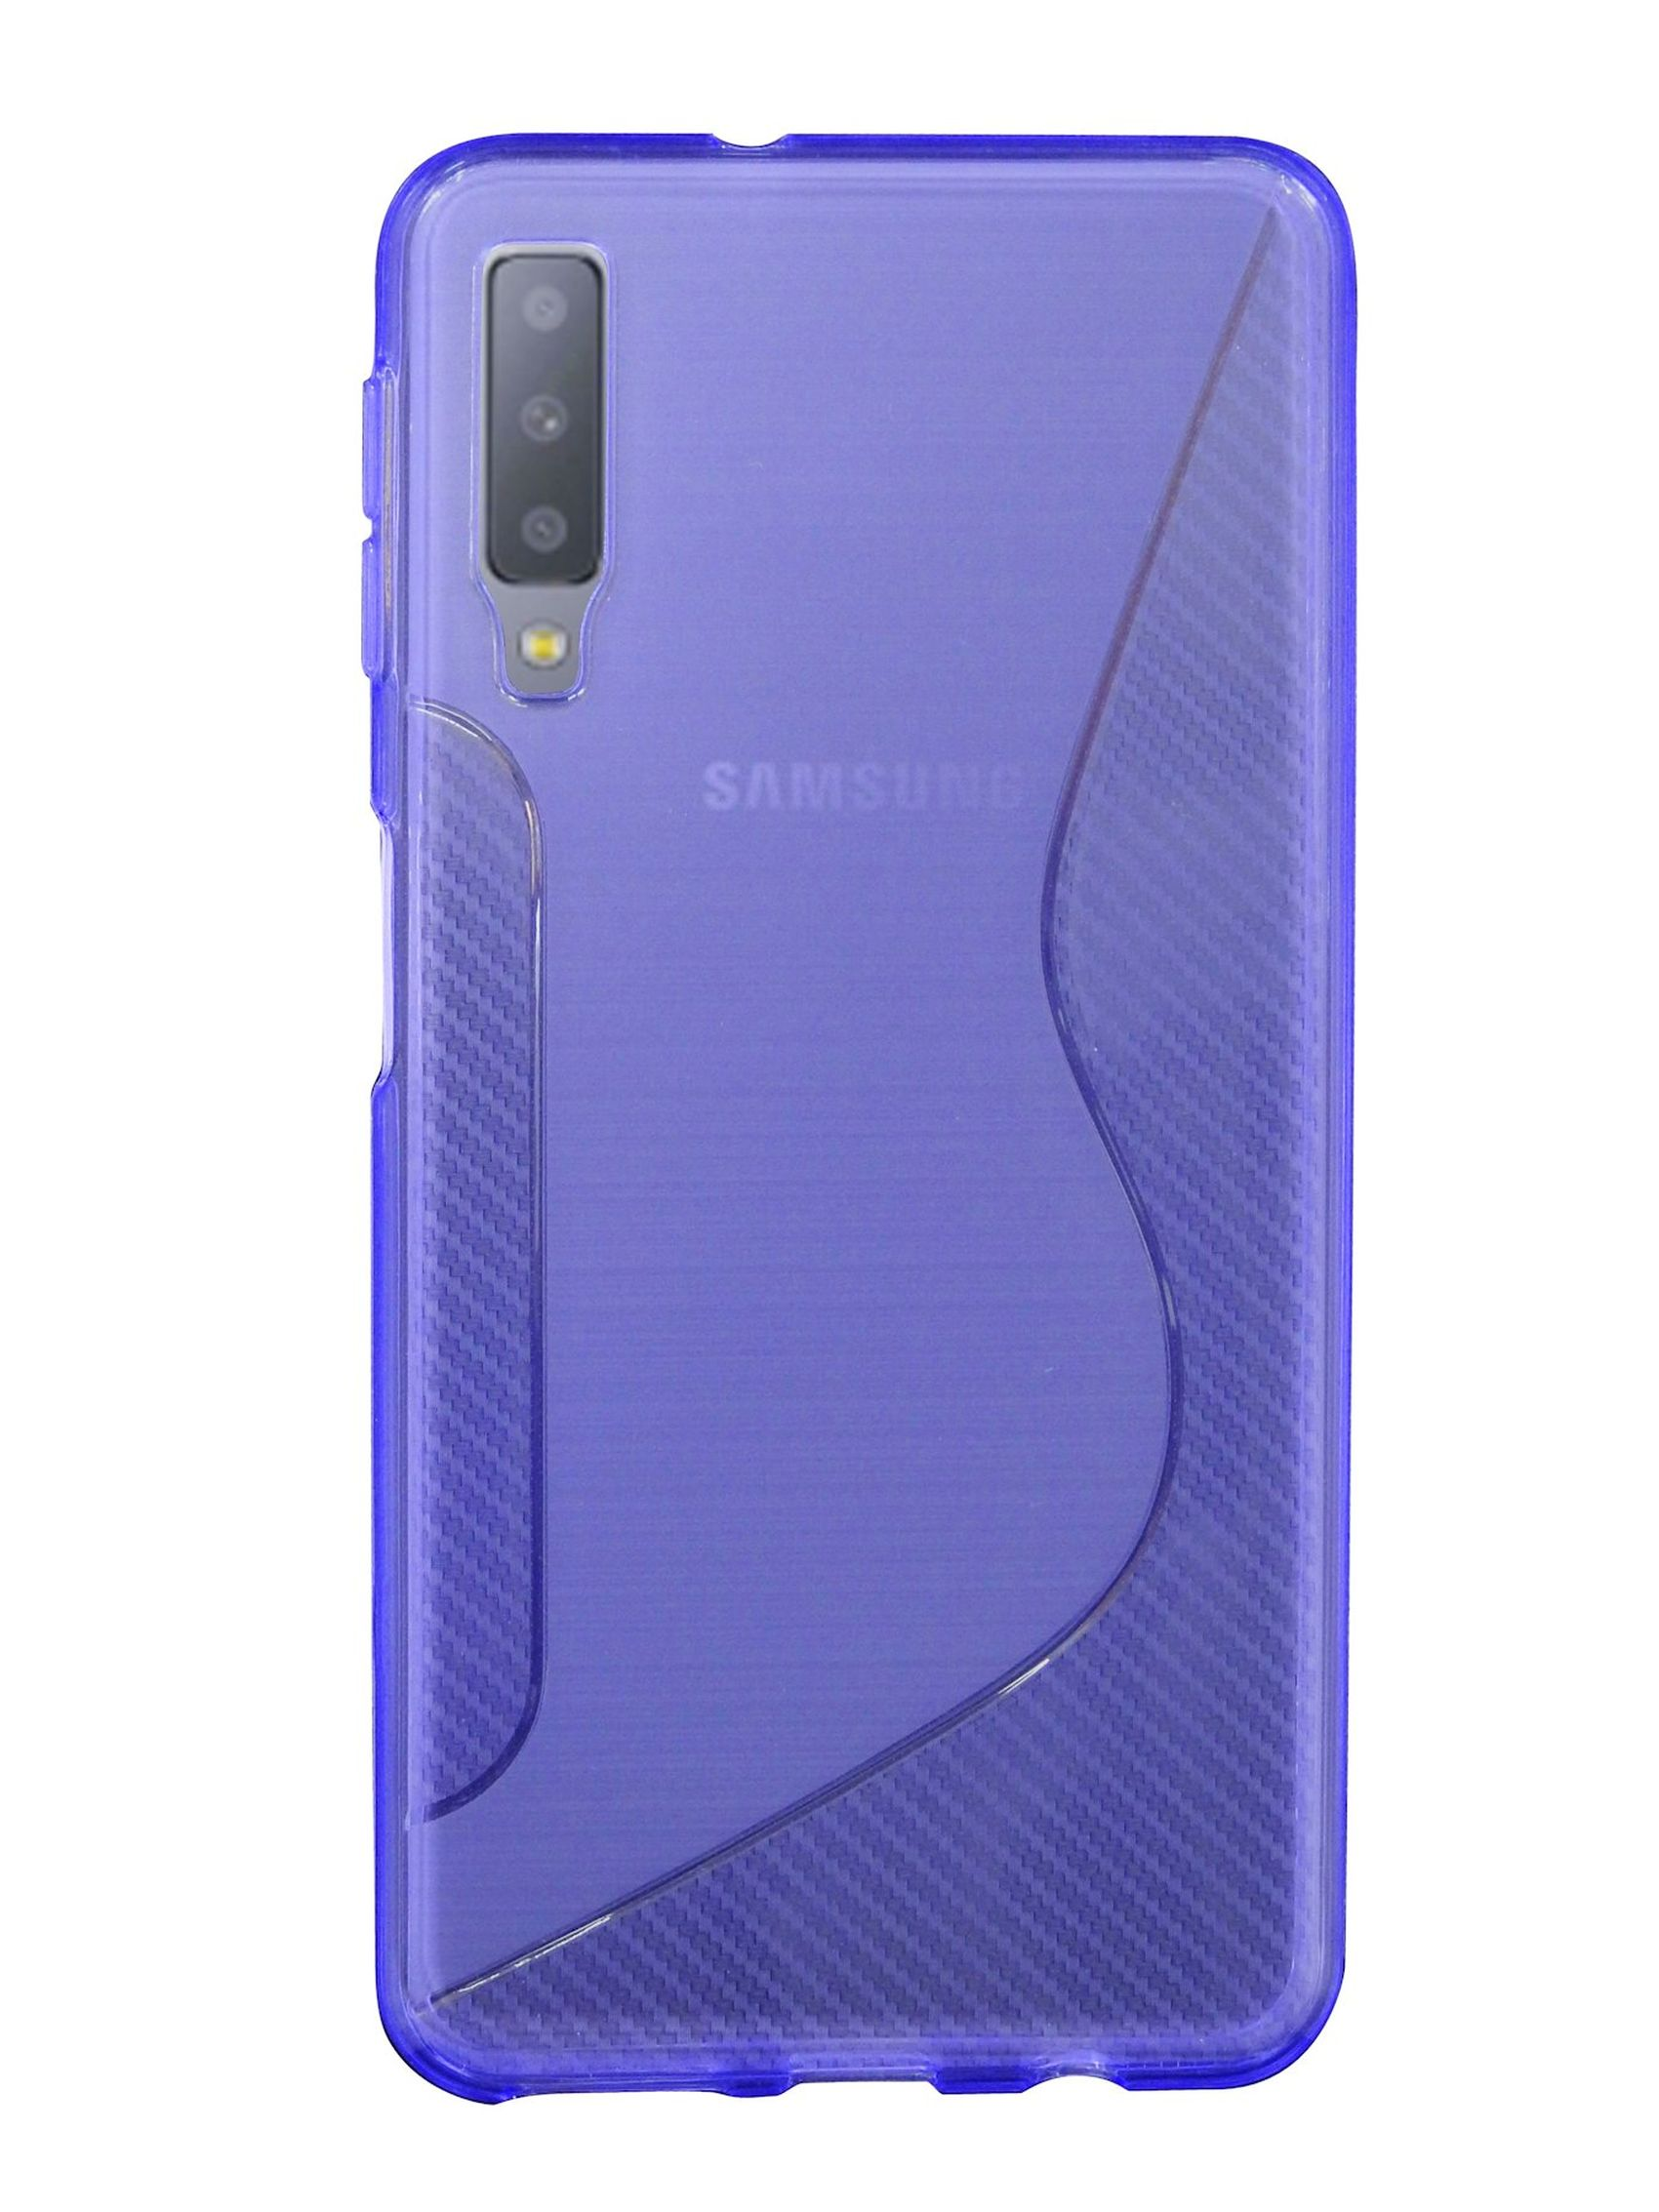 COFI S-Line Cover, Bumper, Violett Galaxy Samsung, 2018, A7